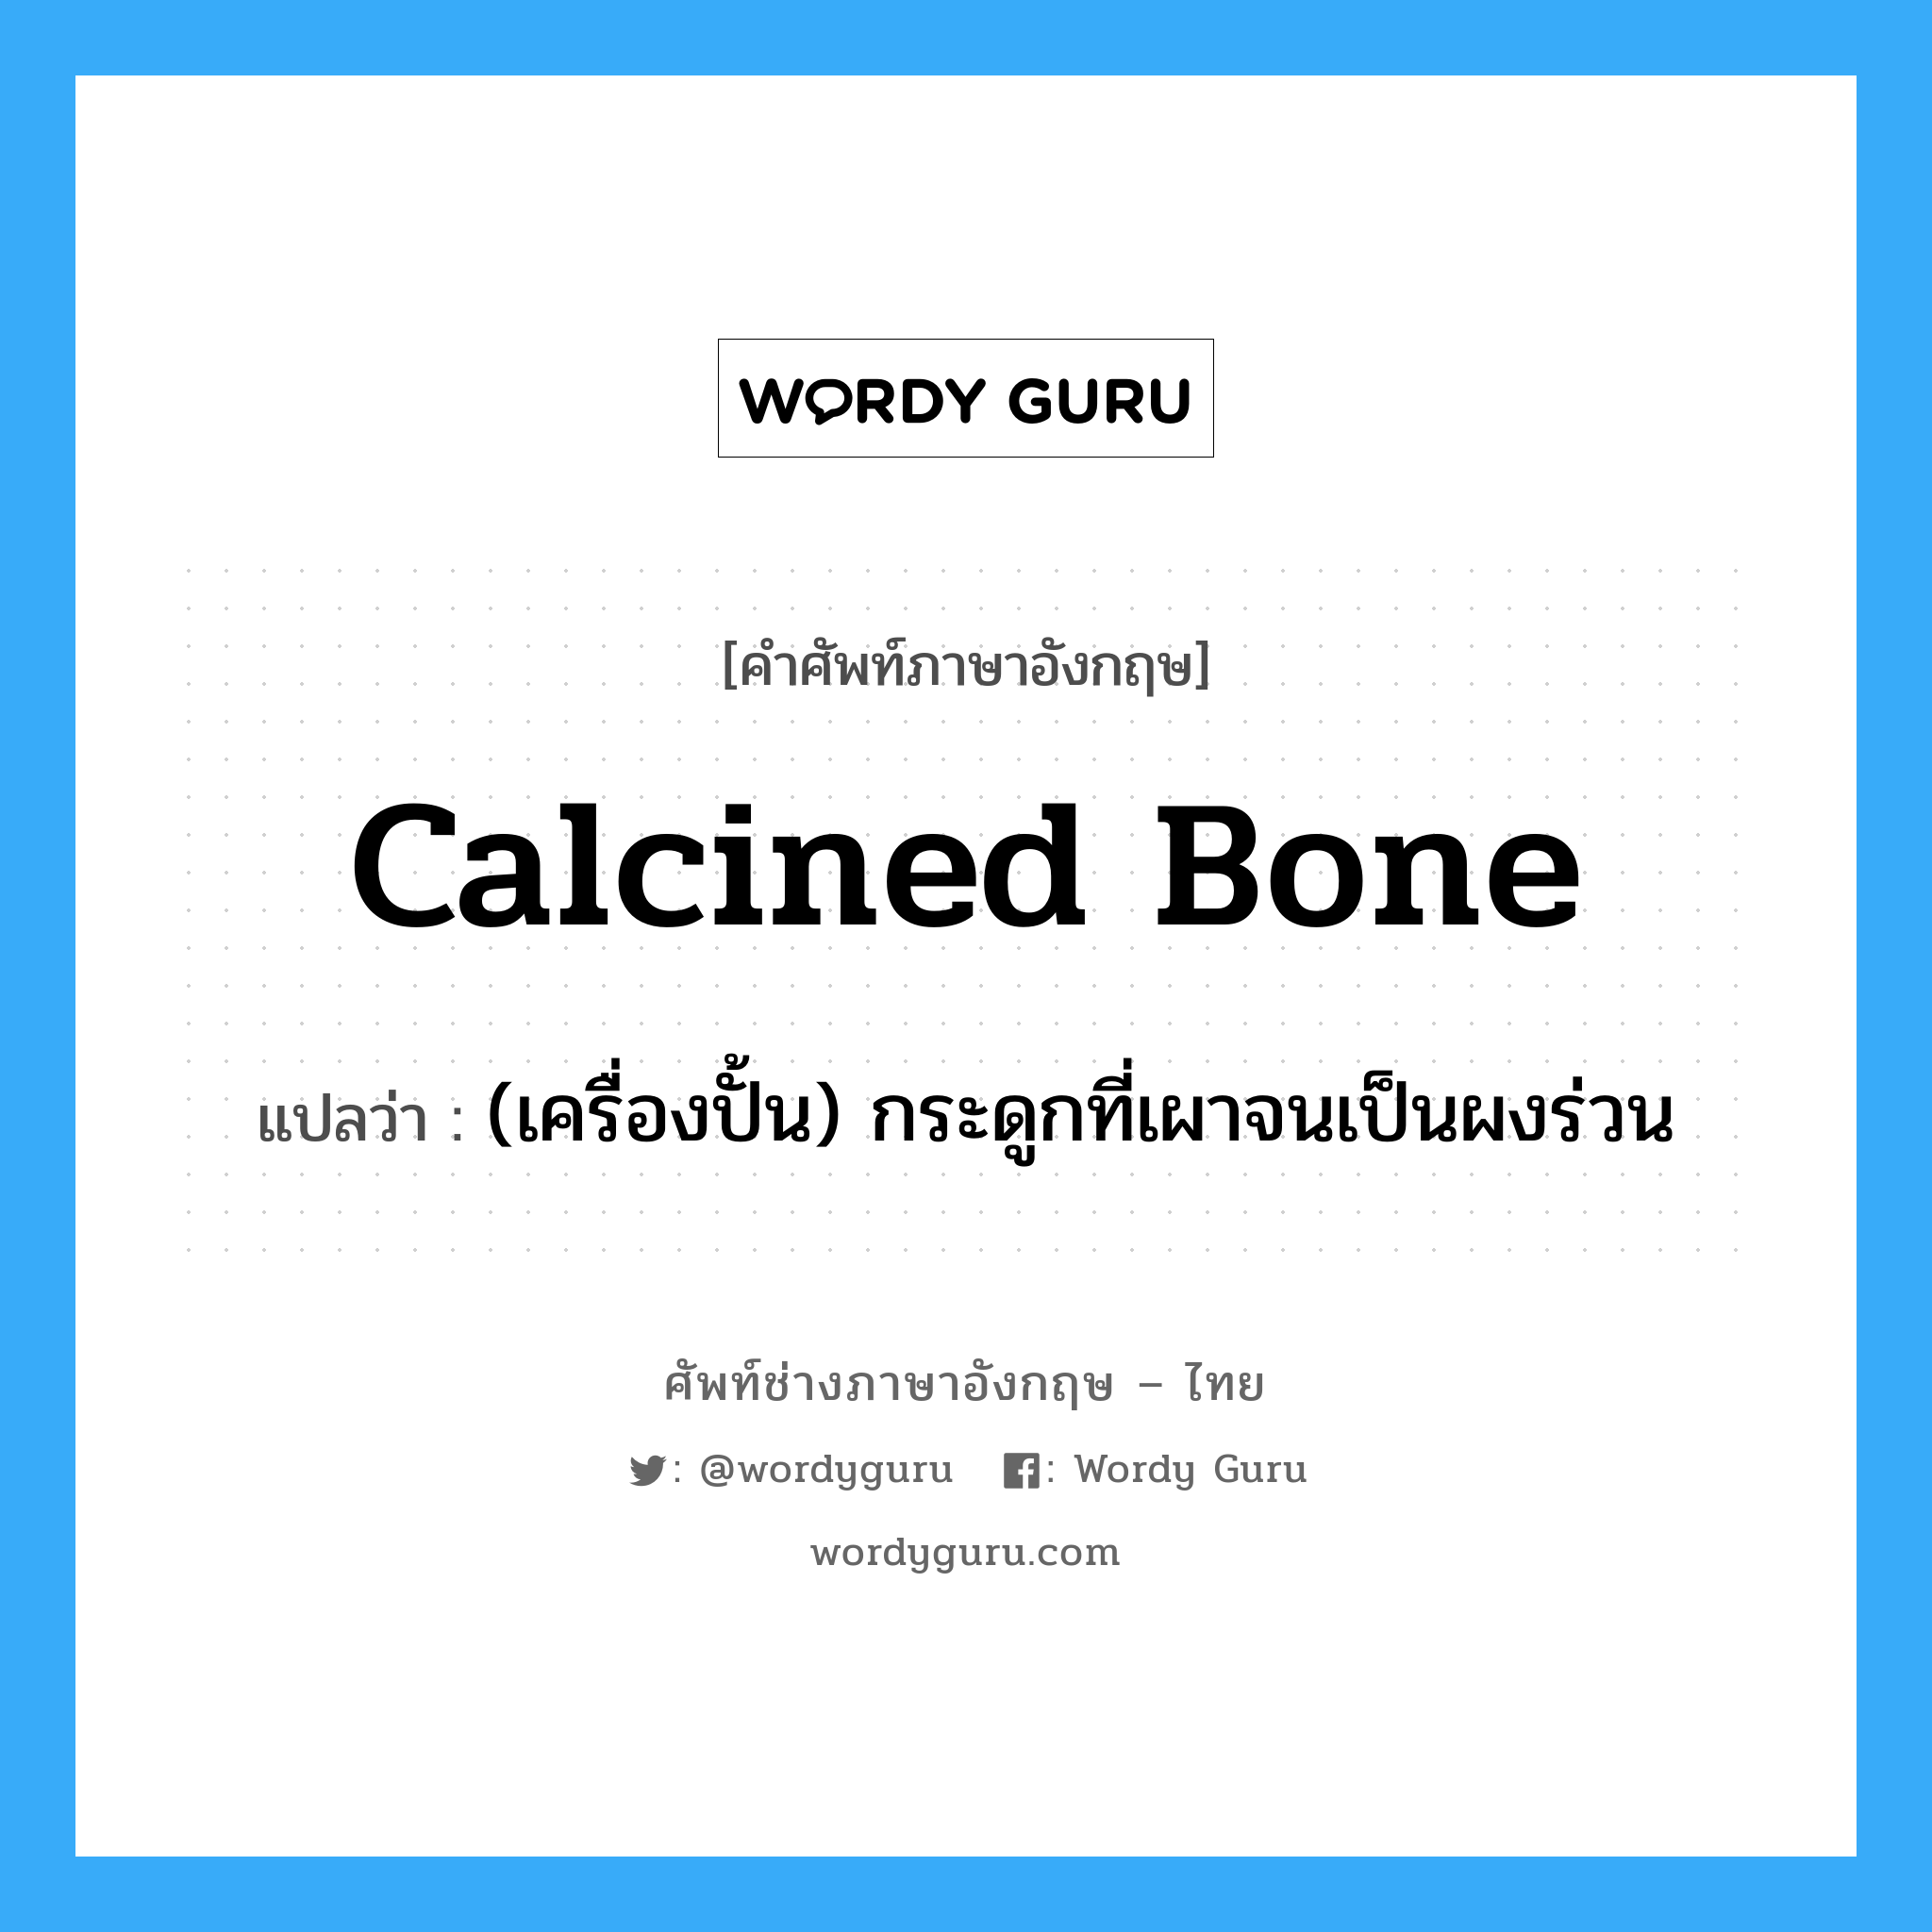 (เครื่องปั้น) กระดูกที่เผาจนเป็นผงร่วน ภาษาอังกฤษ?, คำศัพท์ช่างภาษาอังกฤษ - ไทย (เครื่องปั้น) กระดูกที่เผาจนเป็นผงร่วน คำศัพท์ภาษาอังกฤษ (เครื่องปั้น) กระดูกที่เผาจนเป็นผงร่วน แปลว่า calcined bone